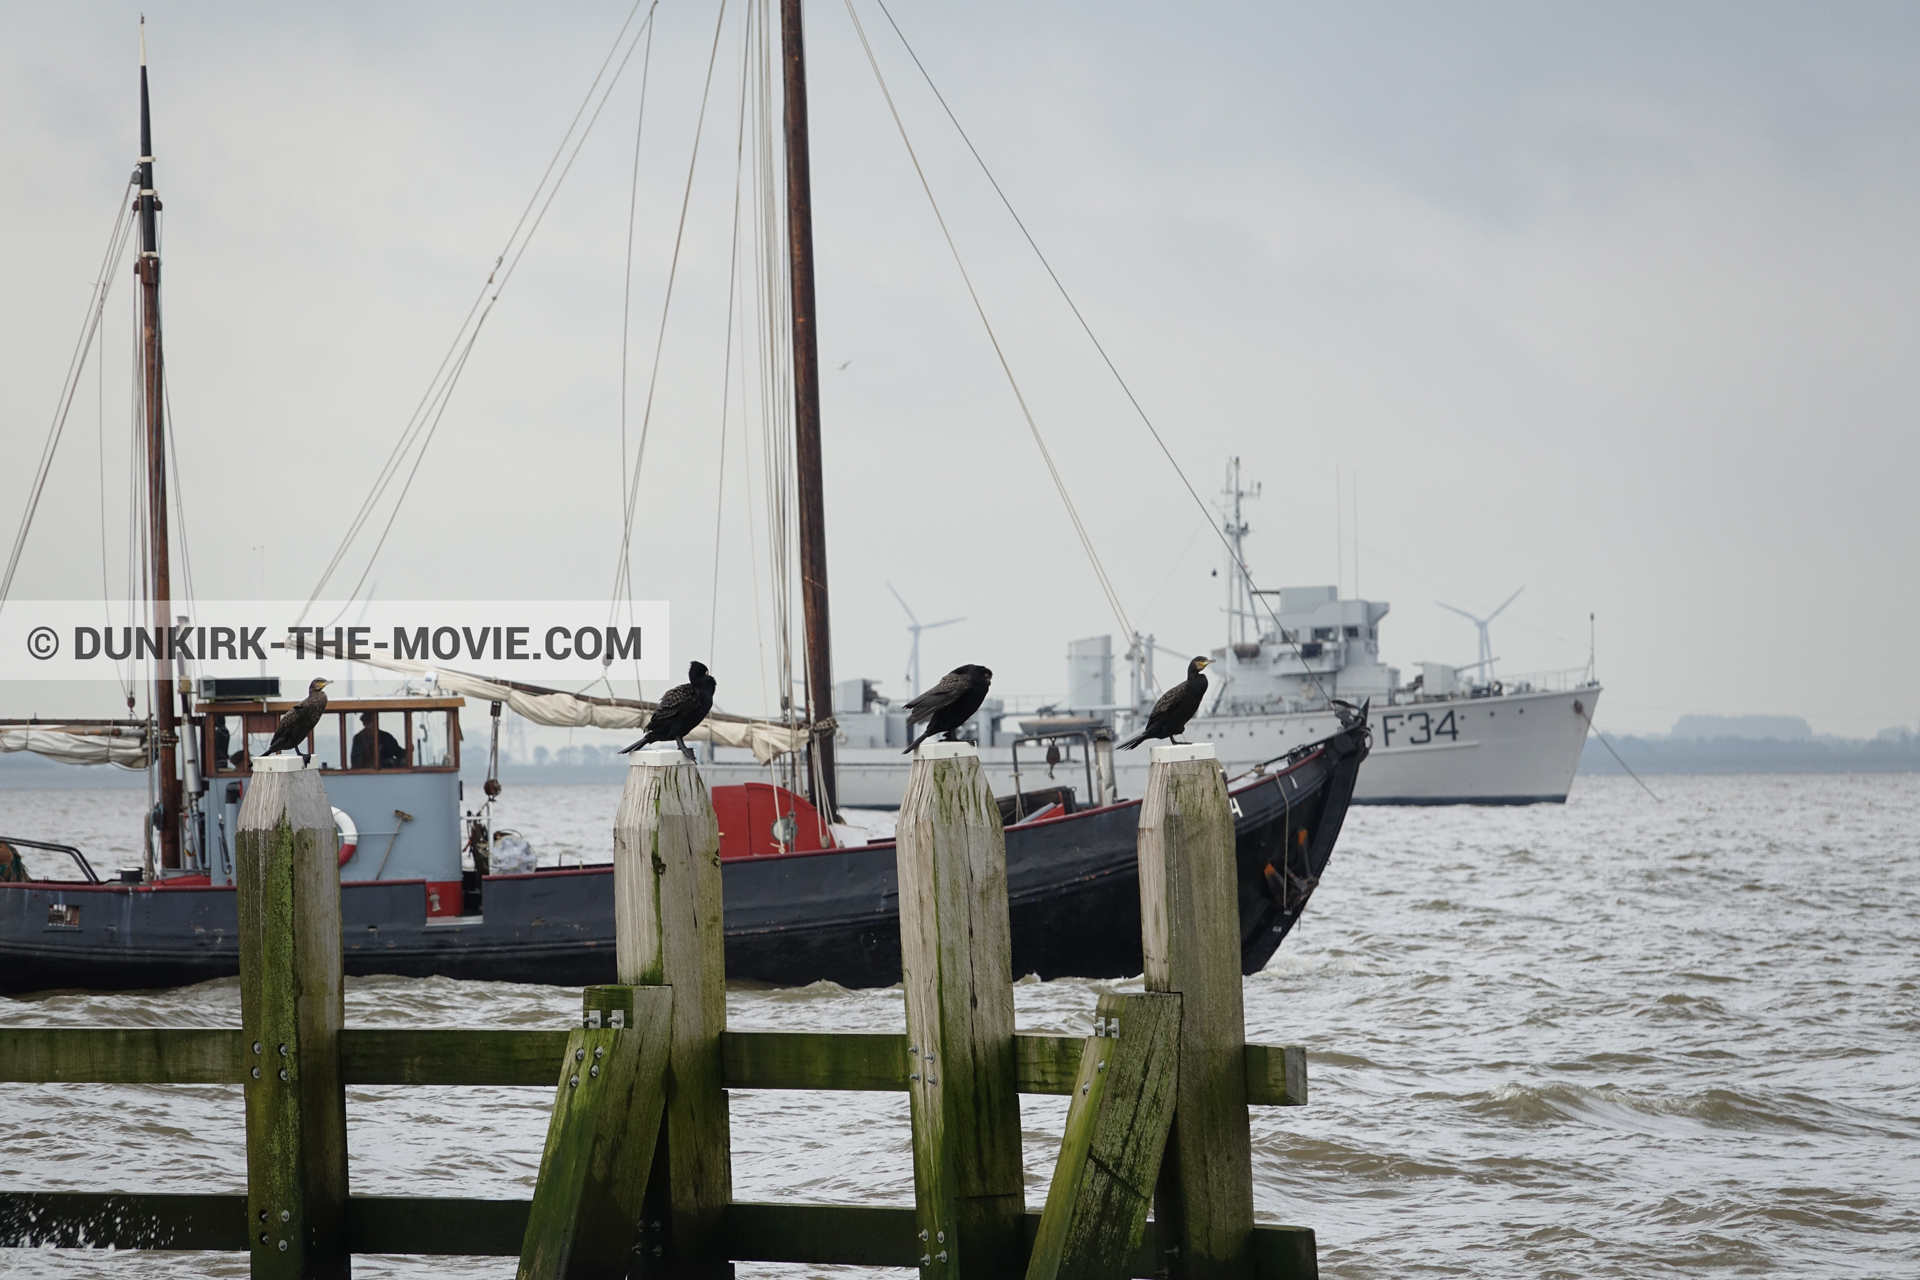 Fotos con barco, F34 - Hr.Ms. Sittard,  durante el rodaje de la película Dunkerque de Nolan